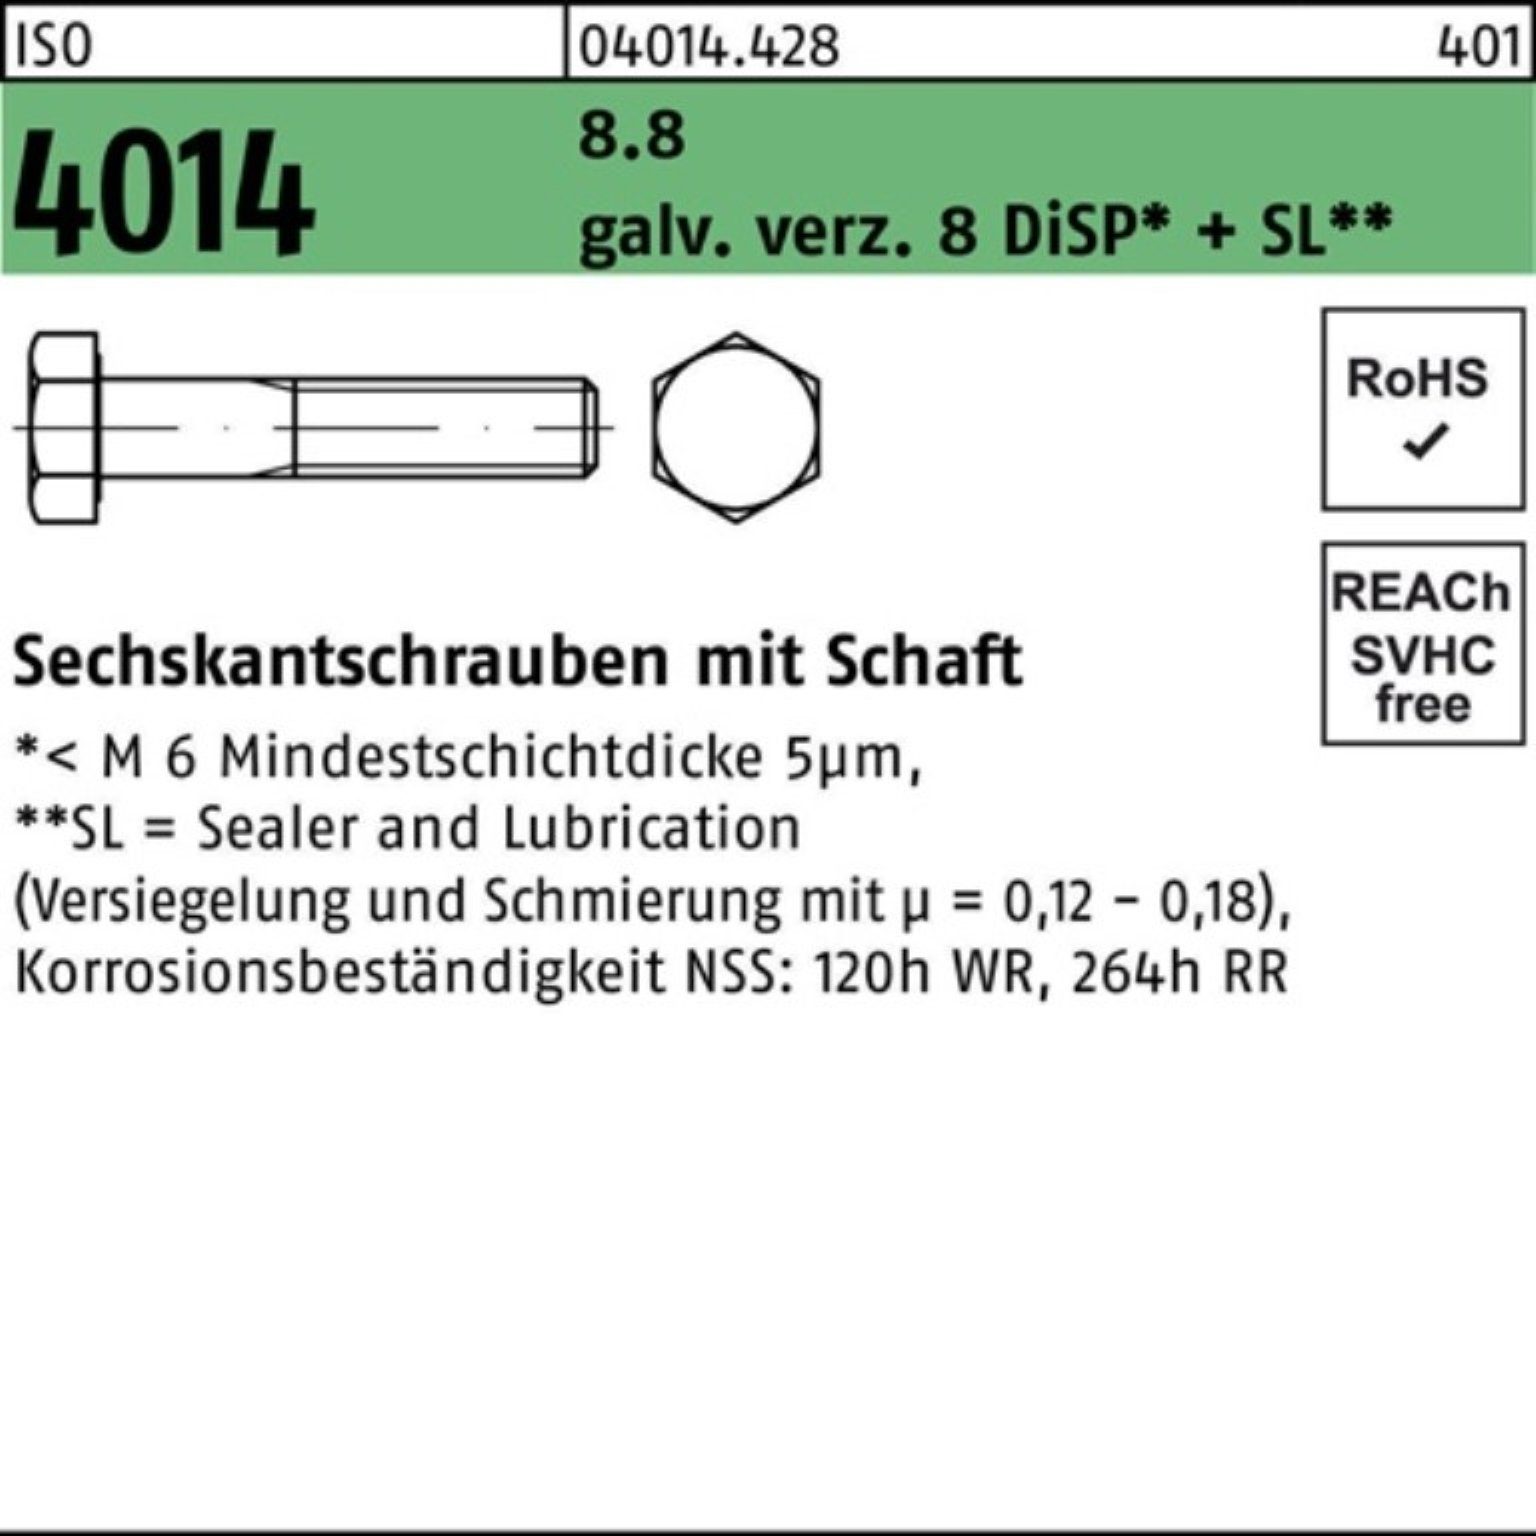 Super günstig AUS Bufab Sechskantschraube 100er Schaft 8.8 D Sechskantschraube Pack 4014 M14x70 ISO 8 galv.verz